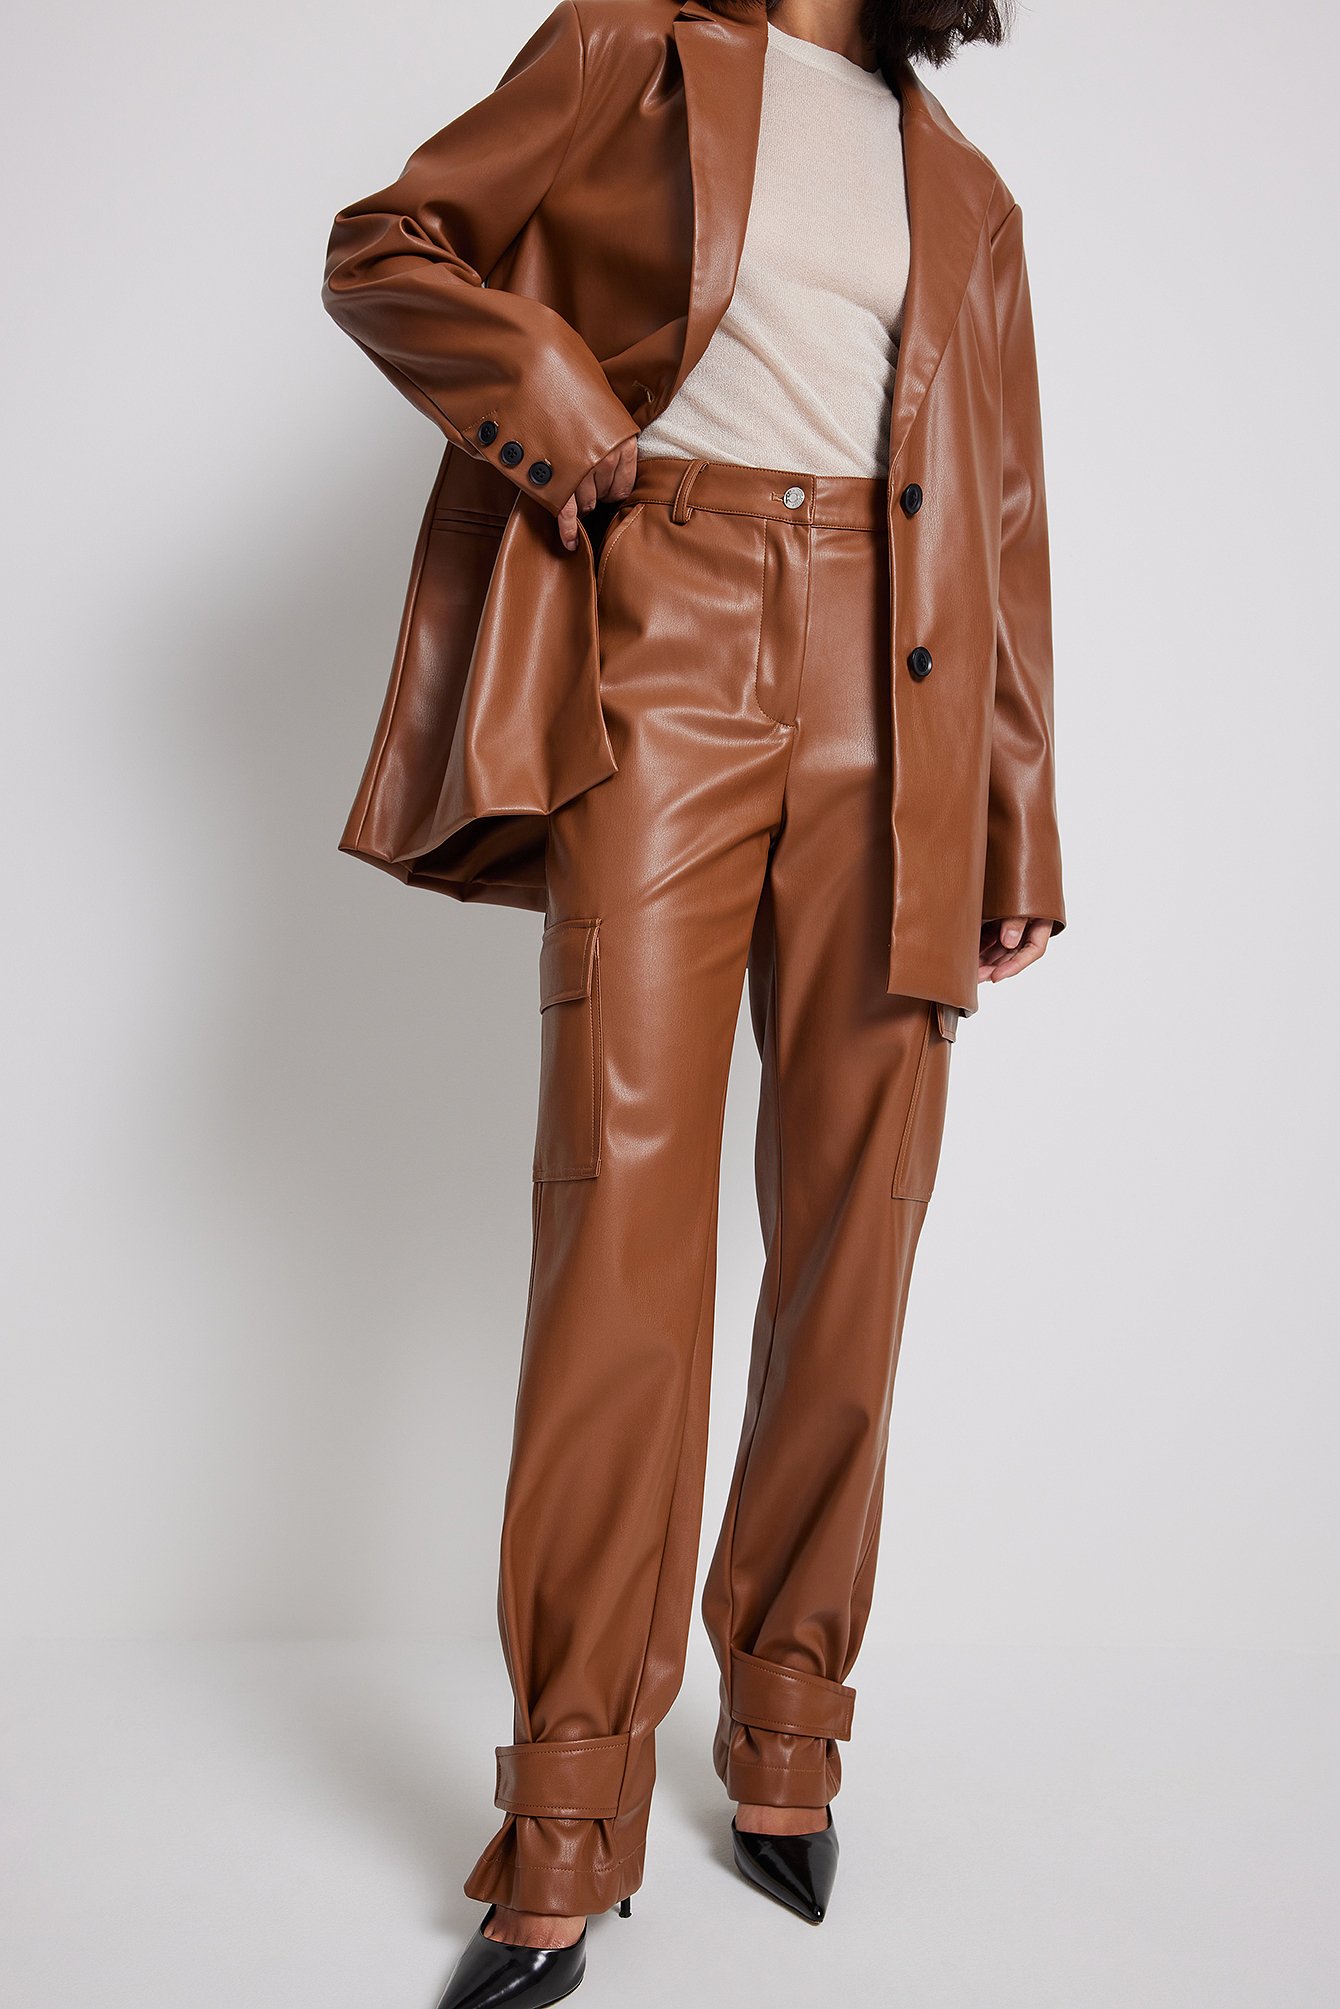 Hide Your Crazy Zipper Front Faux Leather Pants (Brown) · NanaMacs